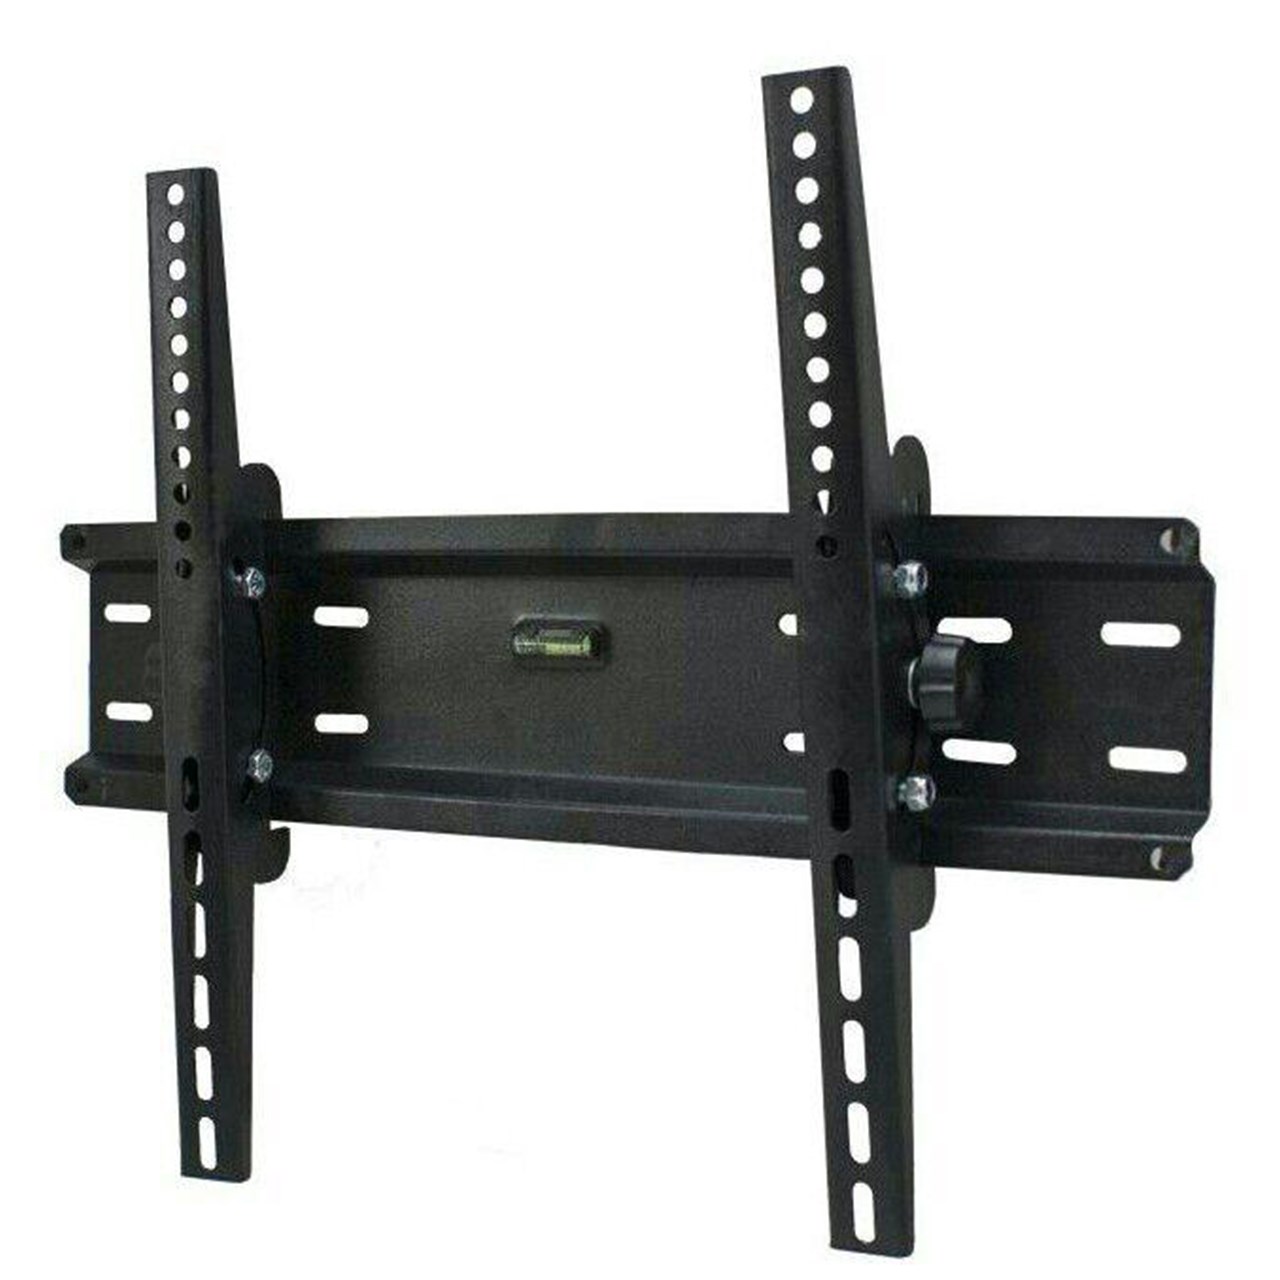 پایه دیواری تی وی جک مدل Z2 مناسب برای تلویزیون های 26 تا 52 اینچ